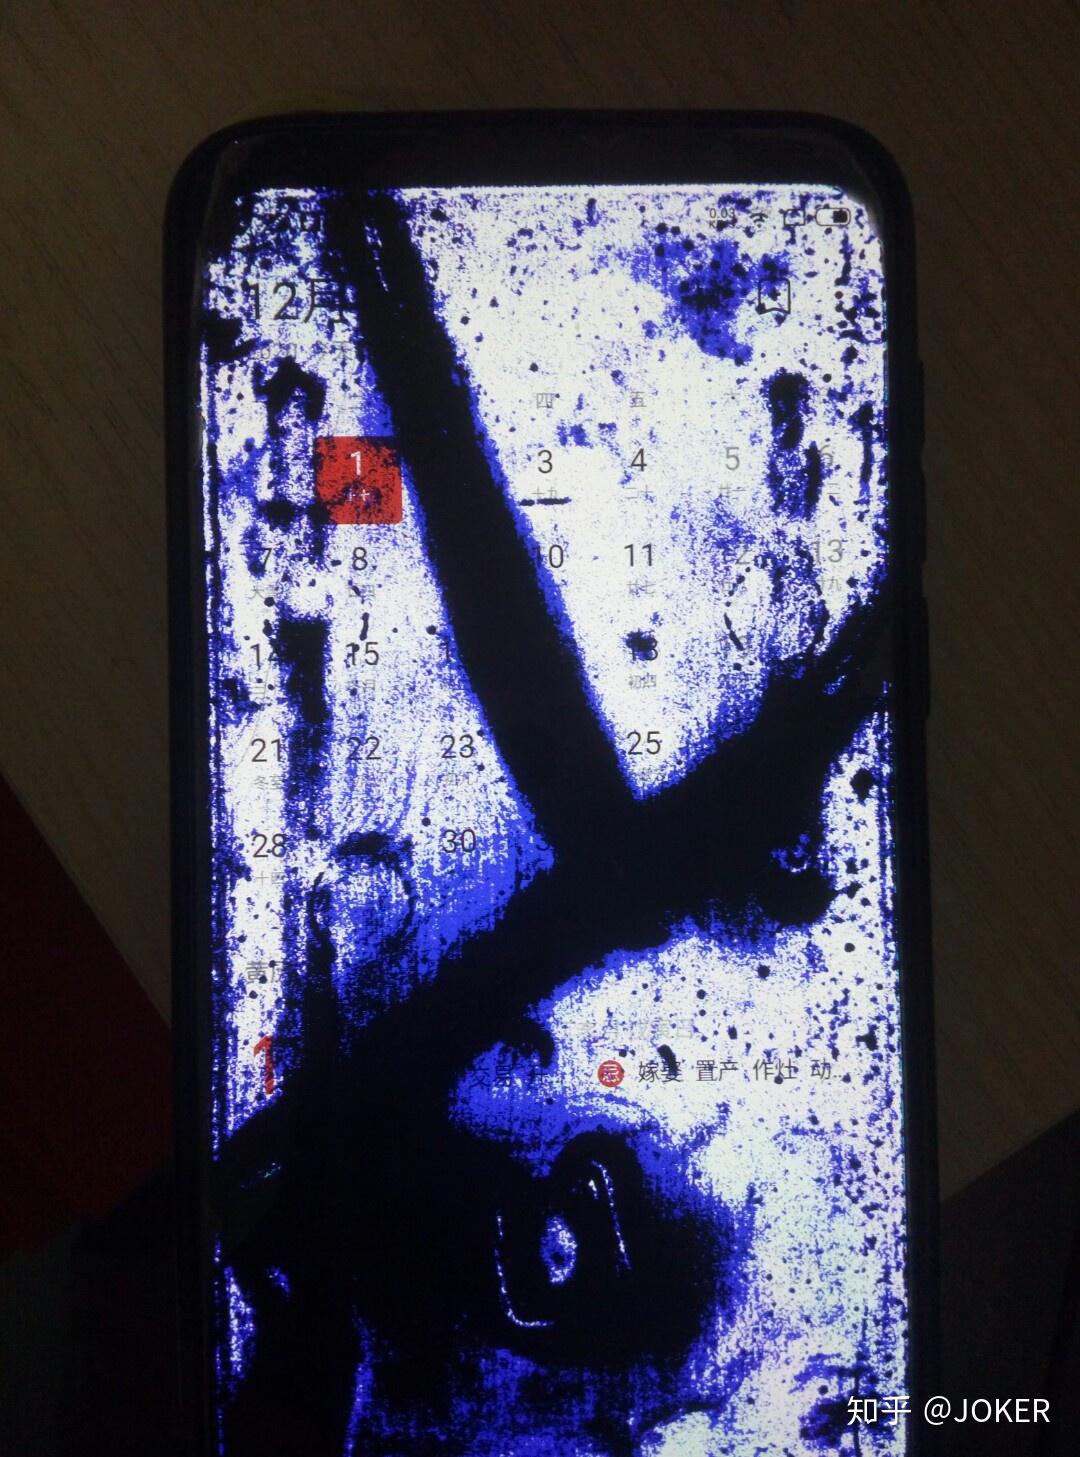 手机屏幕漏液会损害主板吗? 